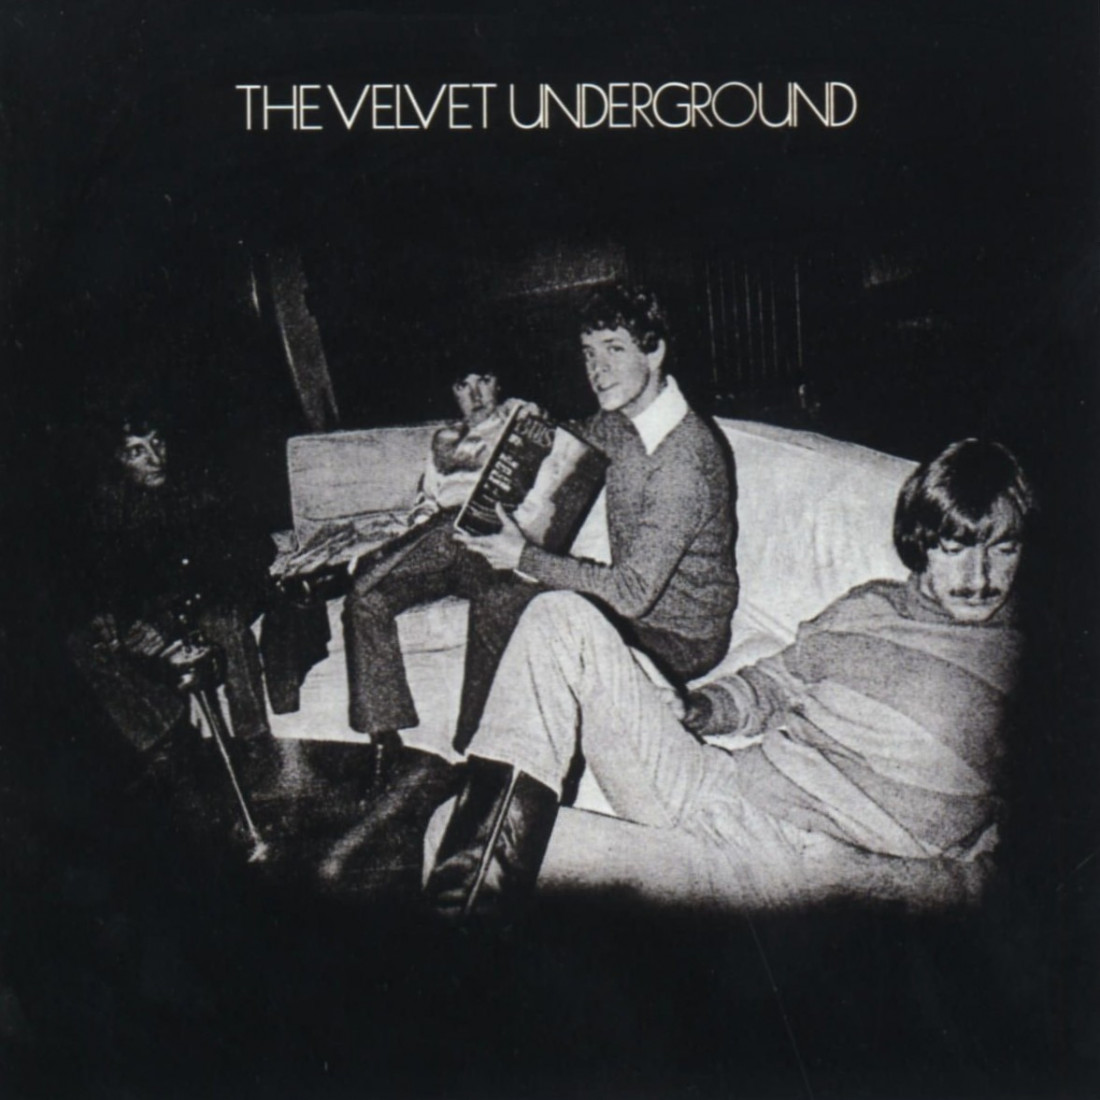 [Velvet Underground] Pale Blue Eyes Photo-Image